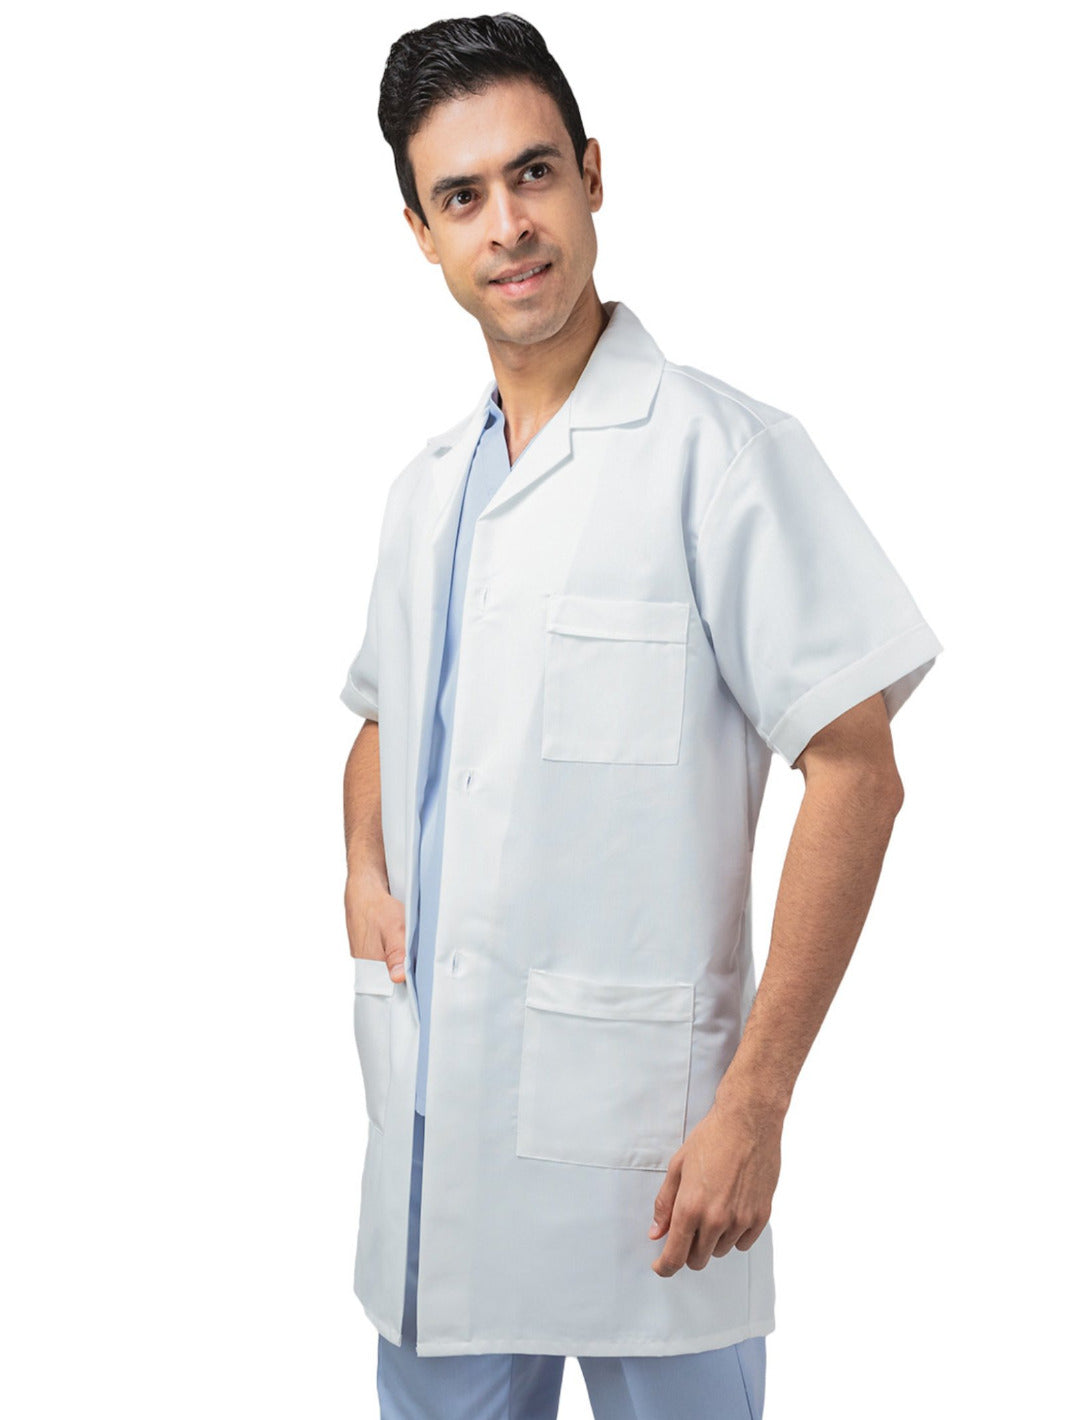 Hombre vistiendo bata blanca de laboratorio de manga corta, largo tres cuartos, con tres bolsas al frente, cinto pegado en la espalda, y tablones invertidos. 